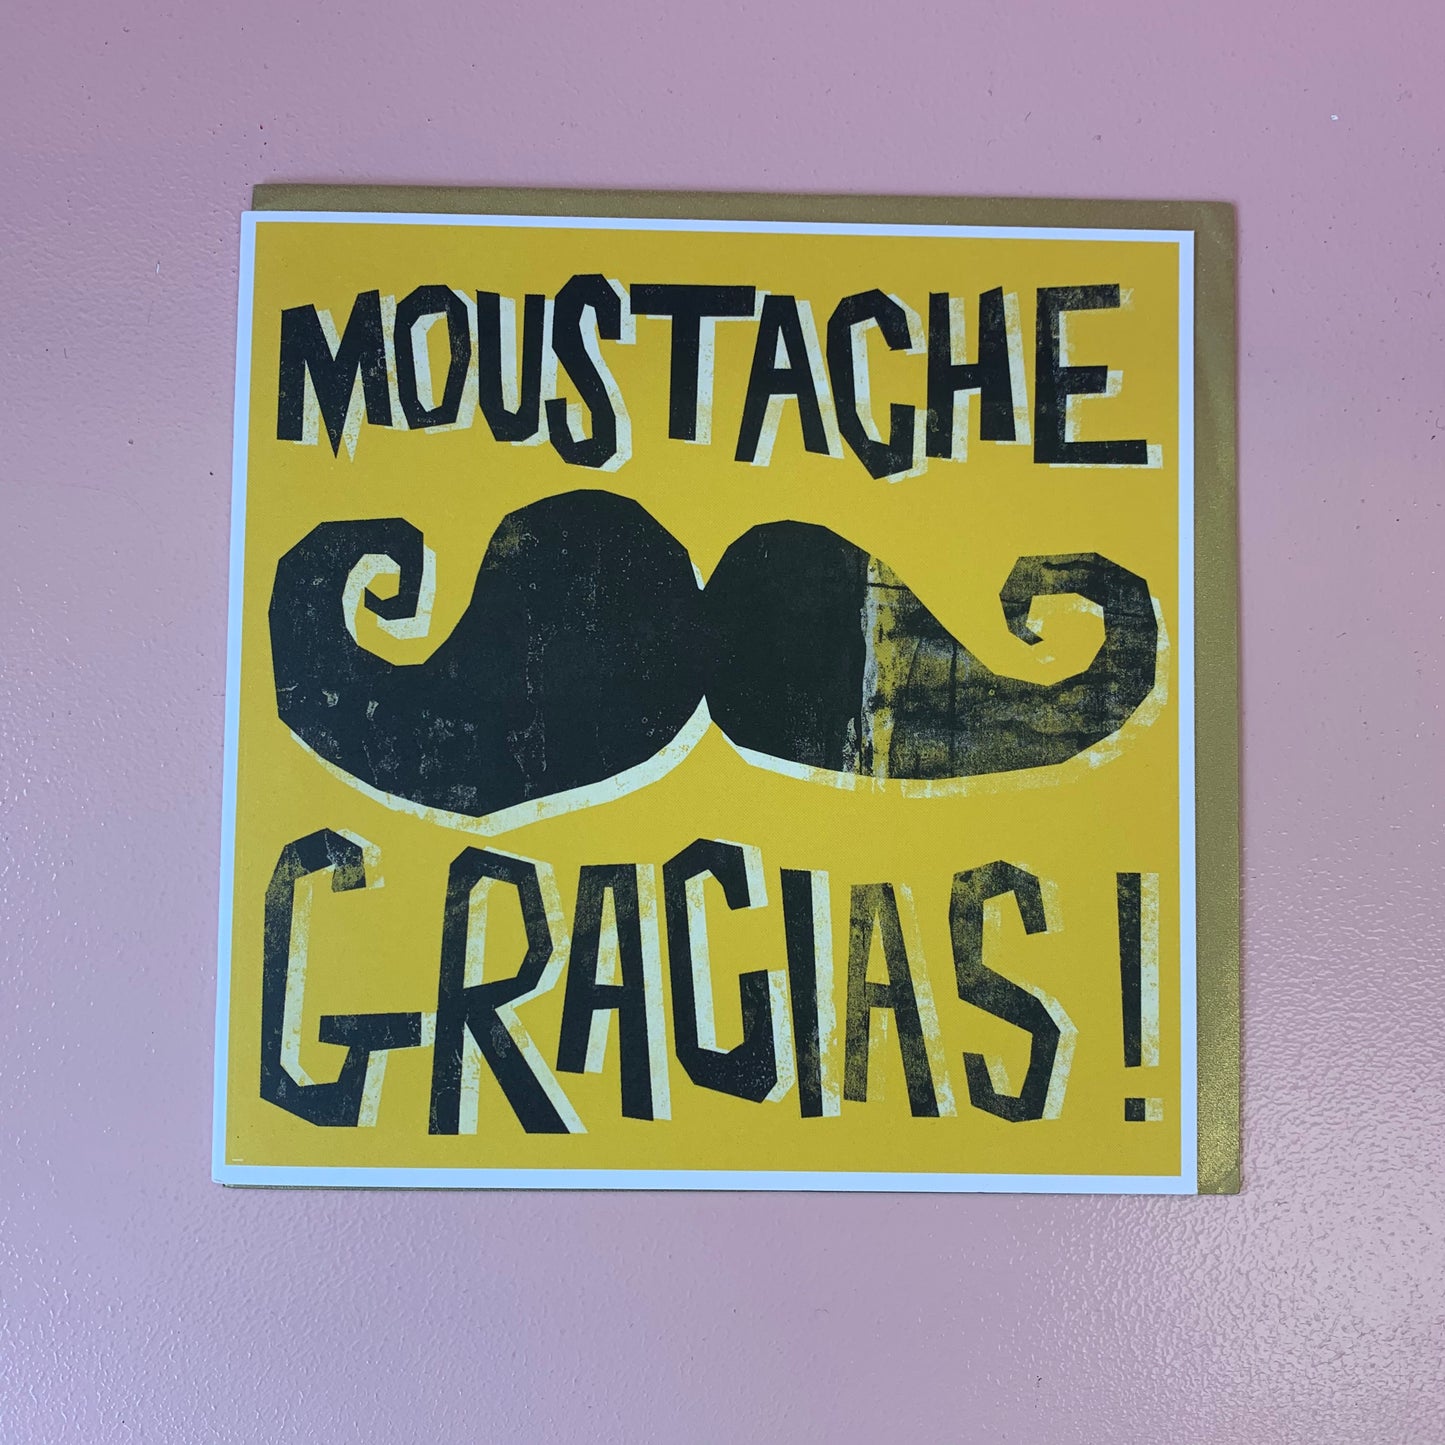 Moustache Gracias! Card